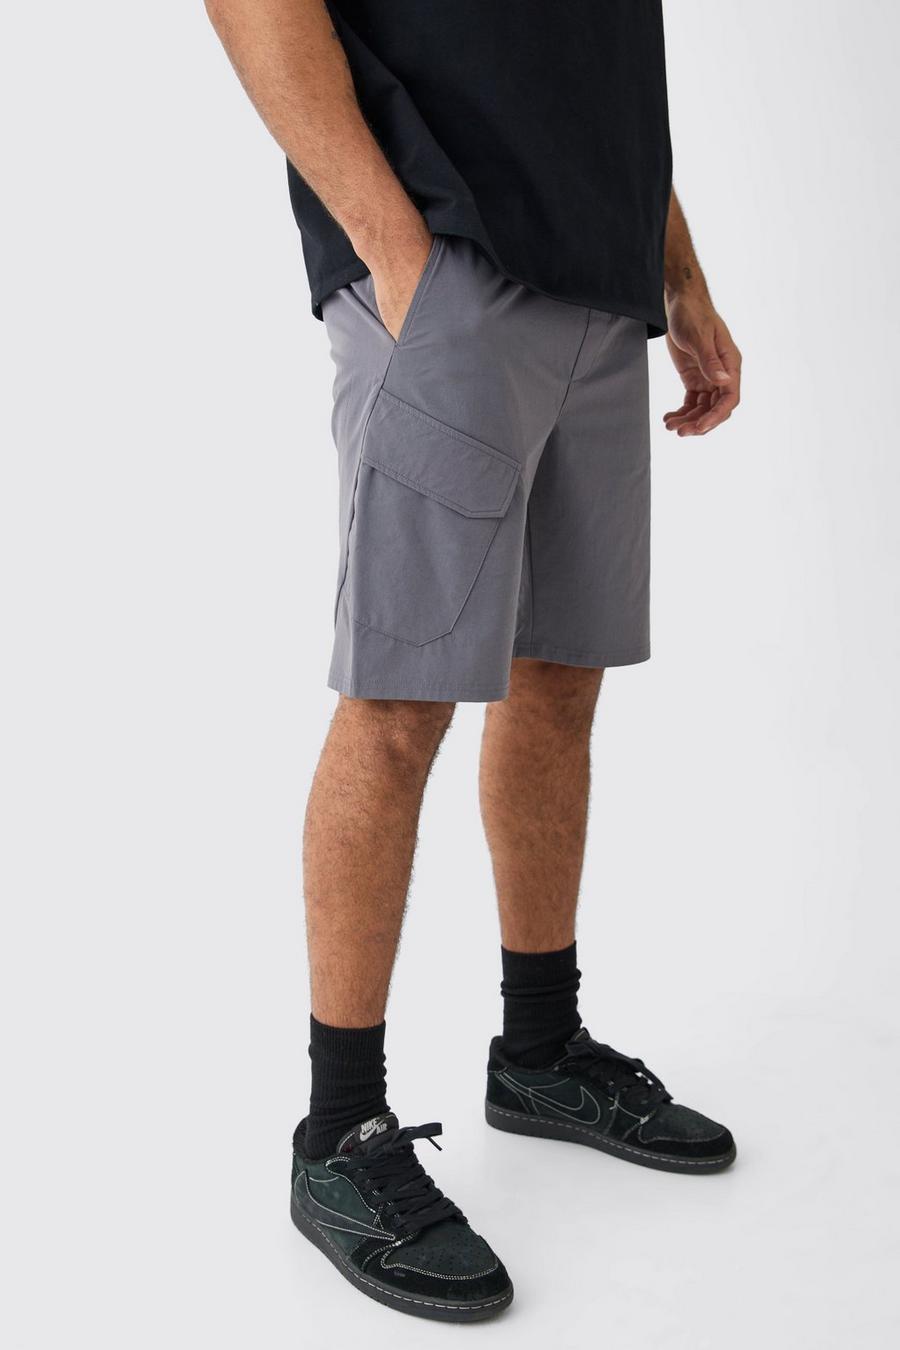 Pantaloncini elasticizzati comodi in Stretch leggero, Charcoal